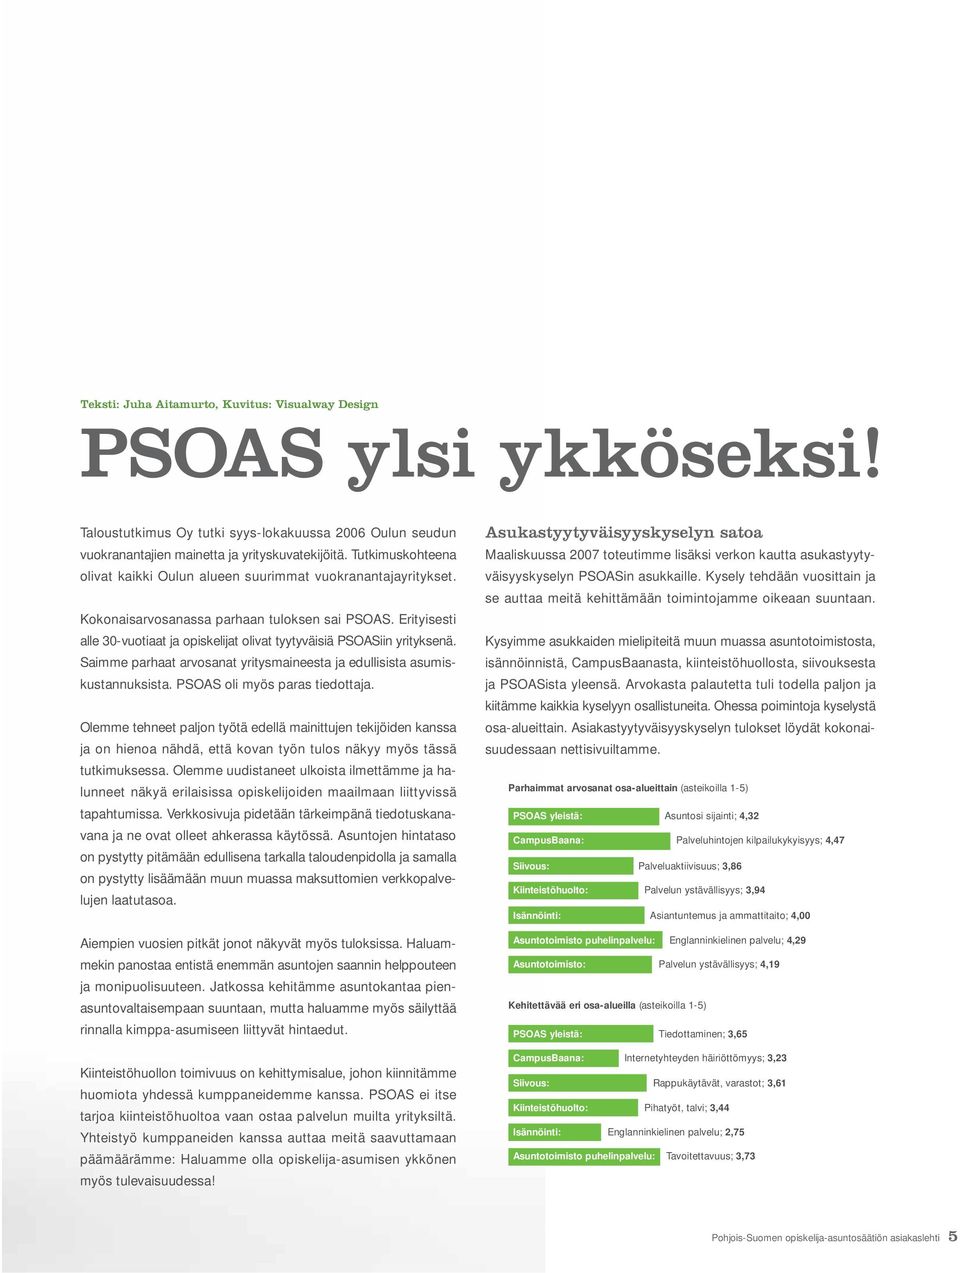 Erityisesti alle 30-vuotiaat ja opiskelijat olivat tyytyväisiä PSOASiin yrityksenä. Saimme parhaat arvosanat yritysmaineesta ja edullisista asumiskustannuksista. PSOAS oli myös paras tiedottaja.